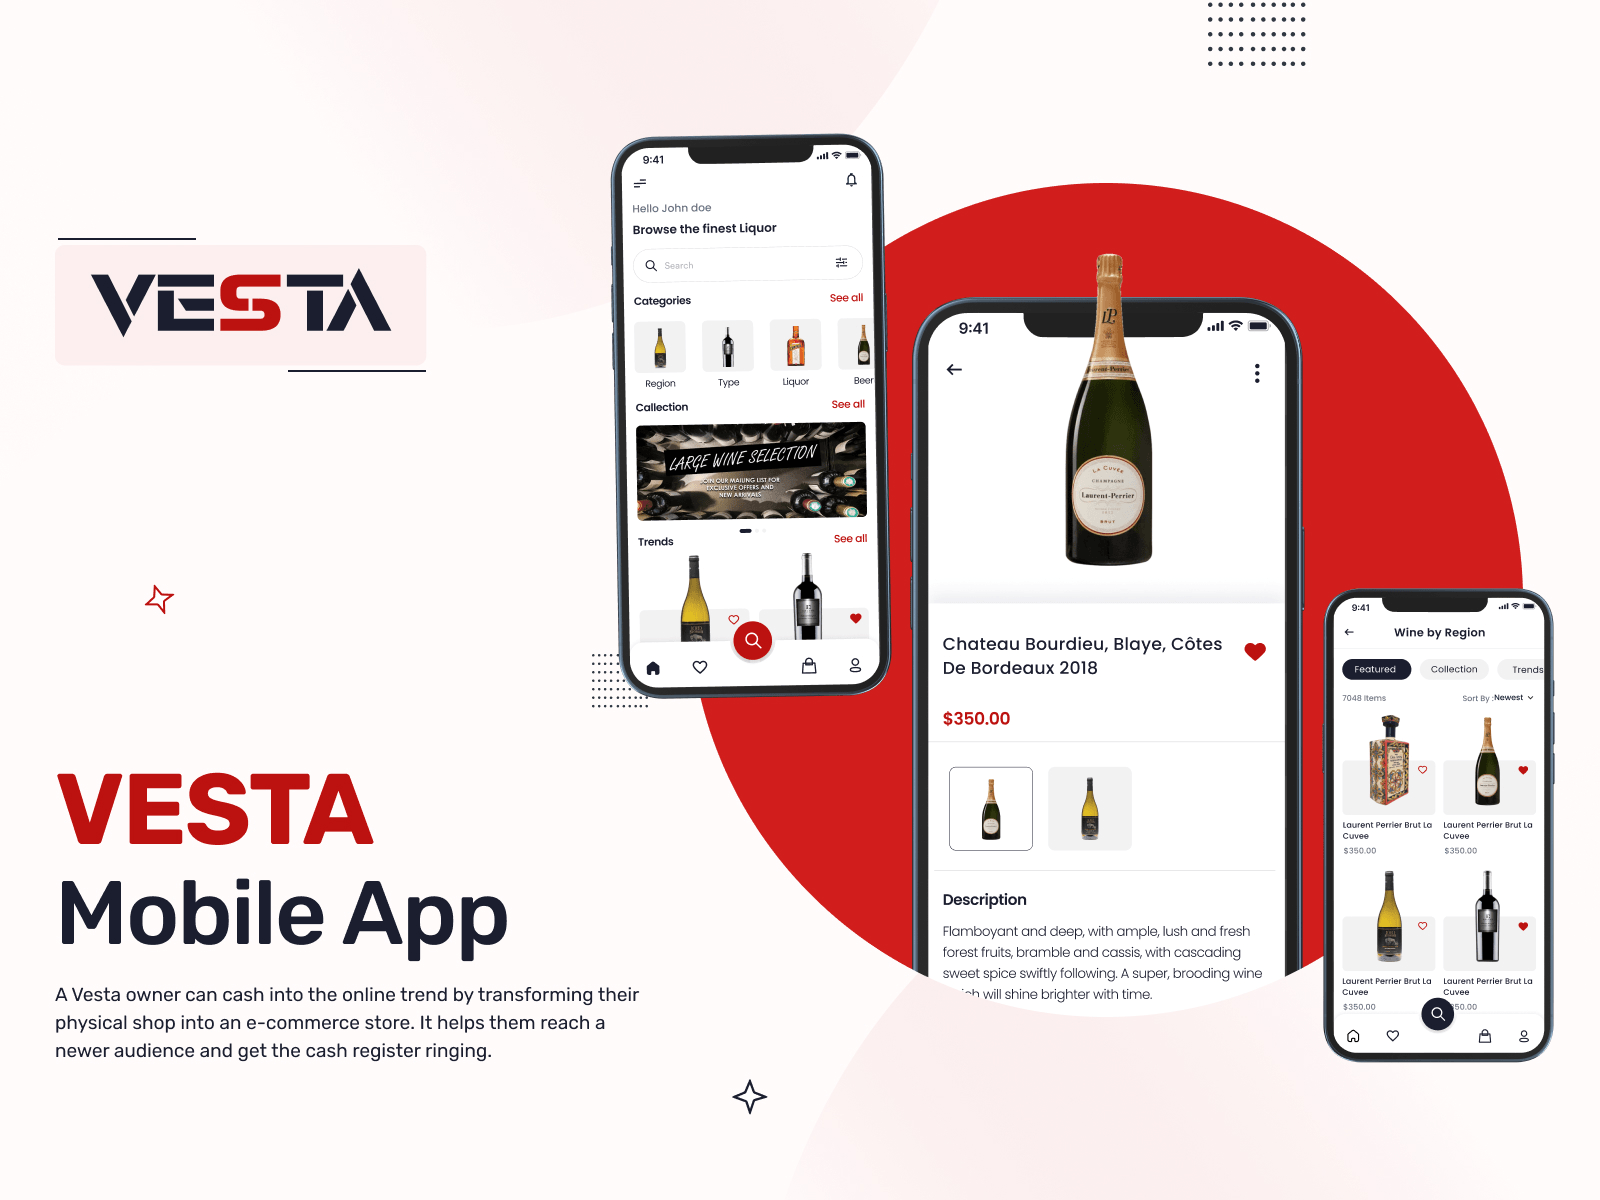 Vesta Mobile App